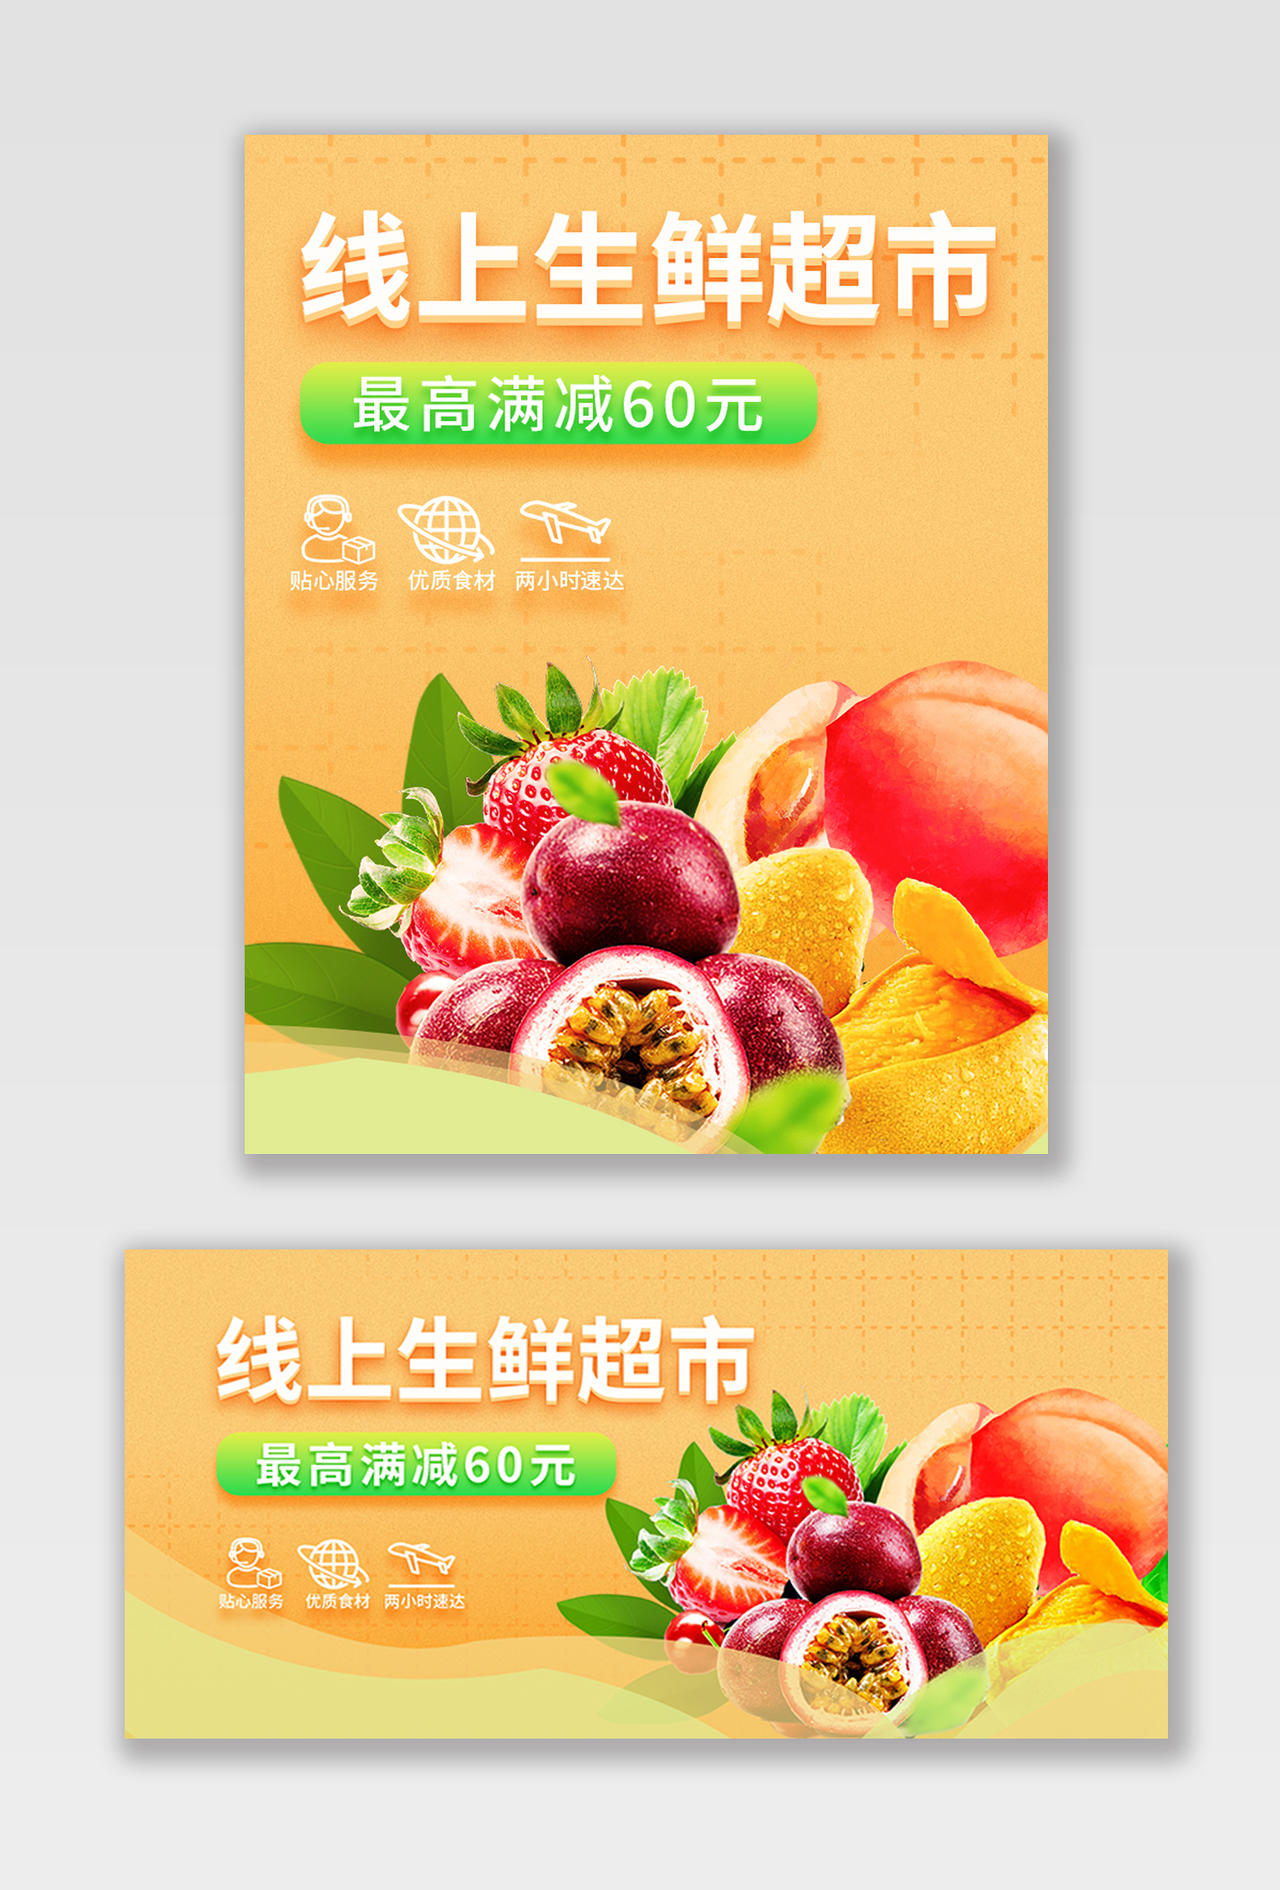 橙黄色清新线上生鲜超市最高满减60元水果生鲜秋天秋季百香果海报banner